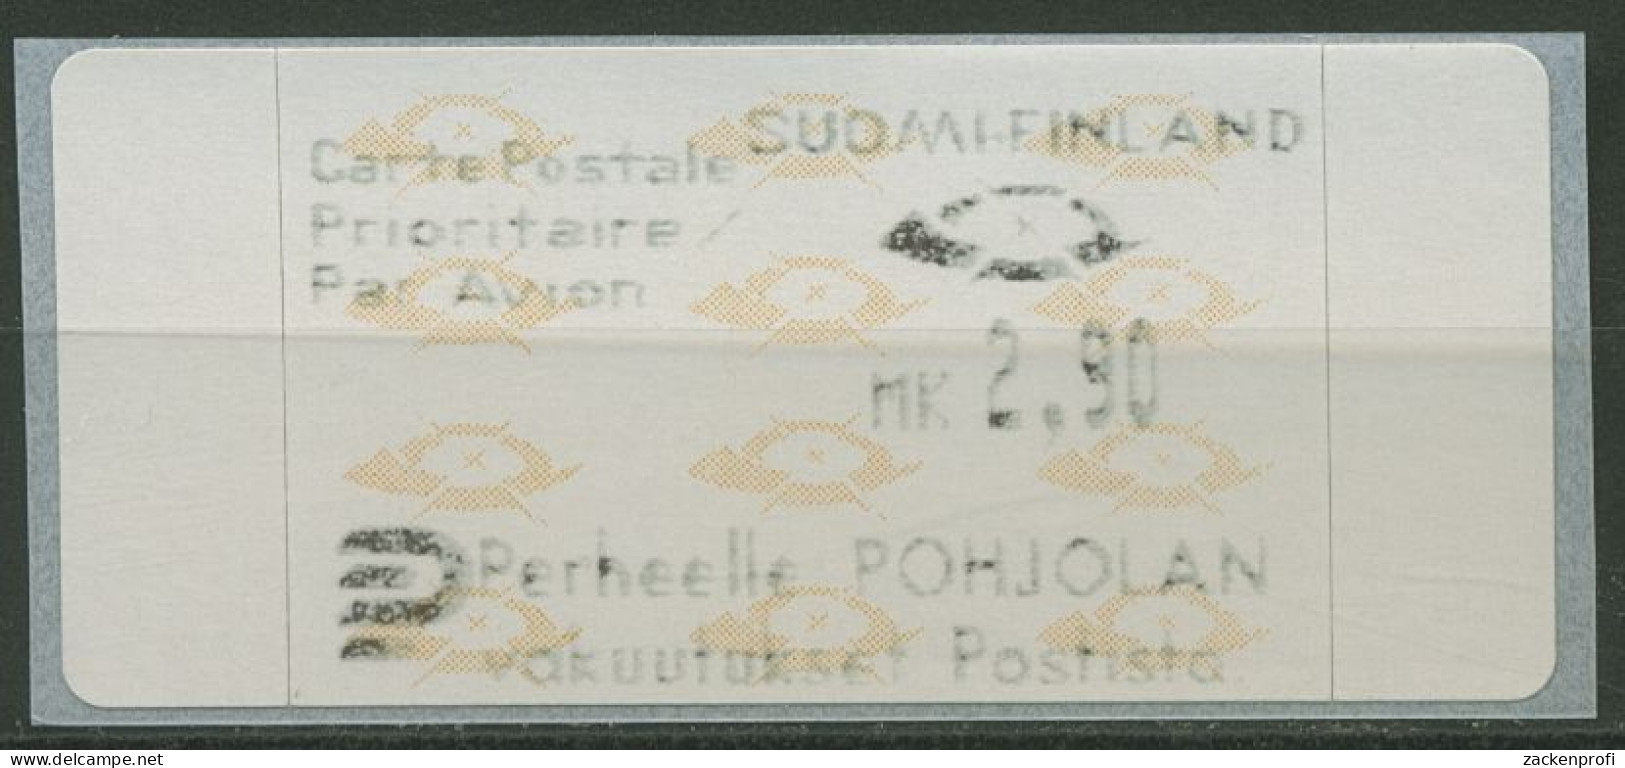 Finnland Automatenmarken 1992 Posthörner Einzelwert ATM 12.3 Z3 Postfrisch - Automaatzegels [ATM]